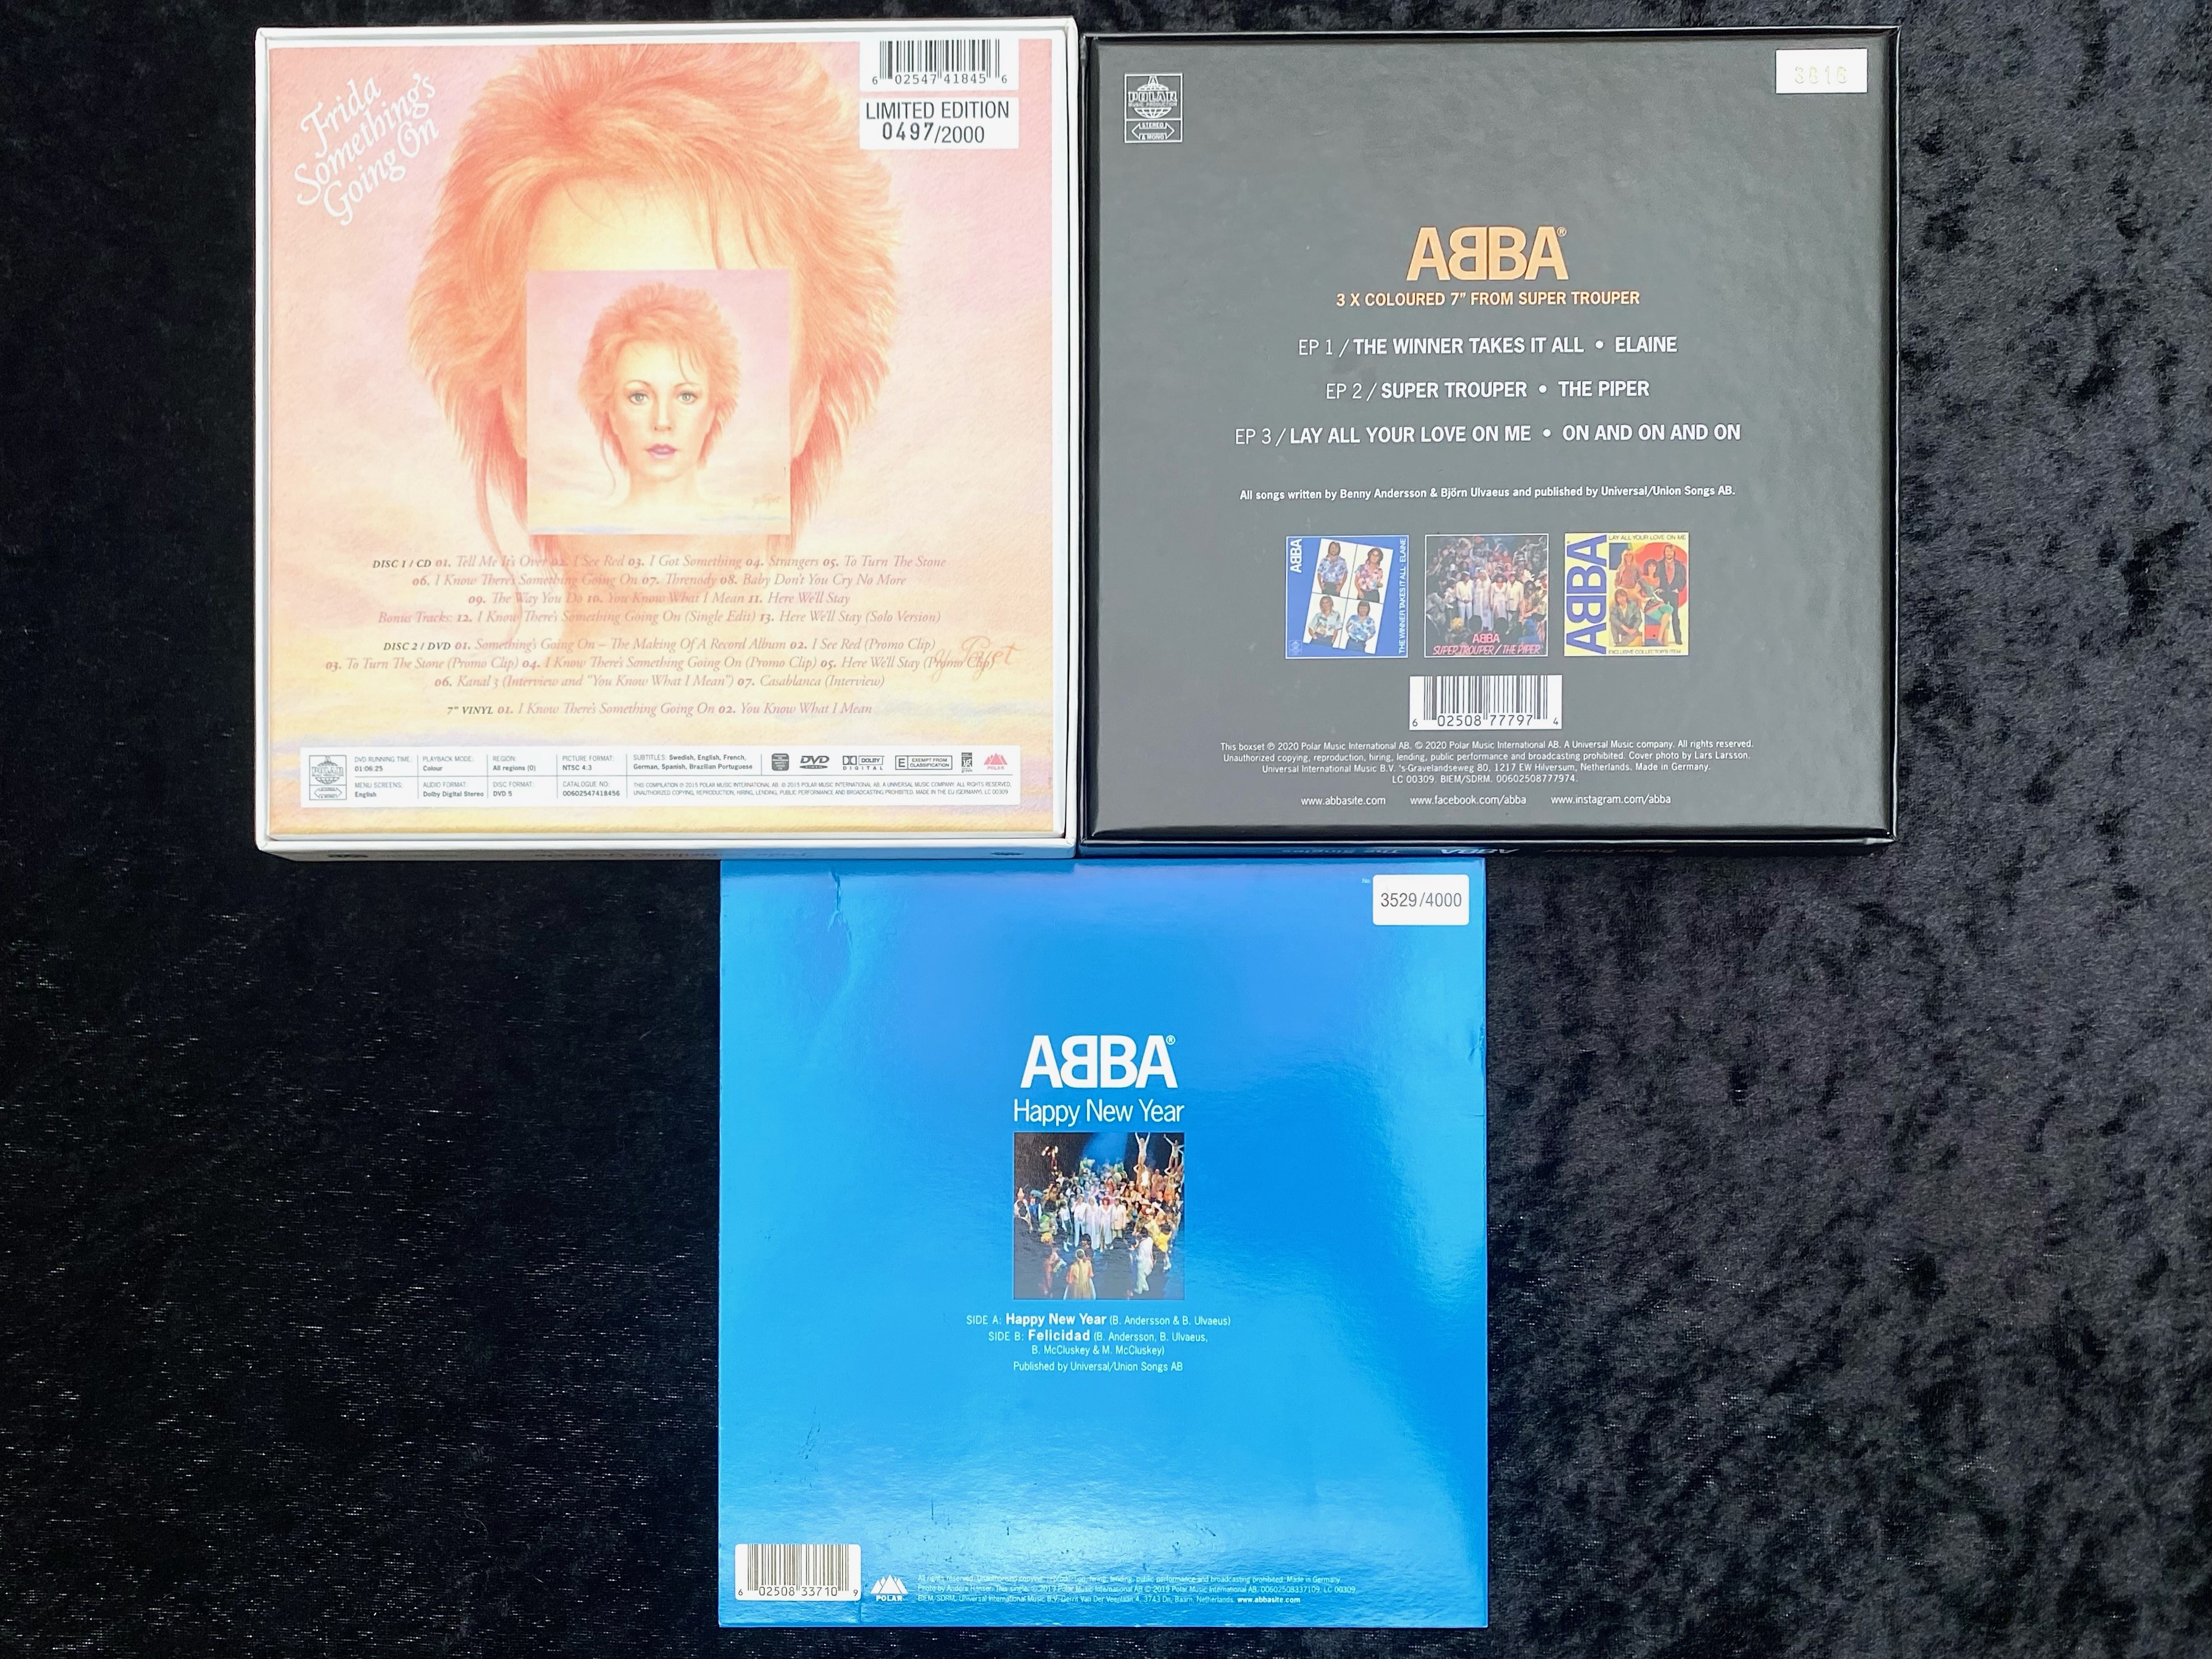 ABBA Interest. Includes 1/ Super Trouper - The Singles 3 x Coloured 7 Inch Box Set. - Image 2 of 3